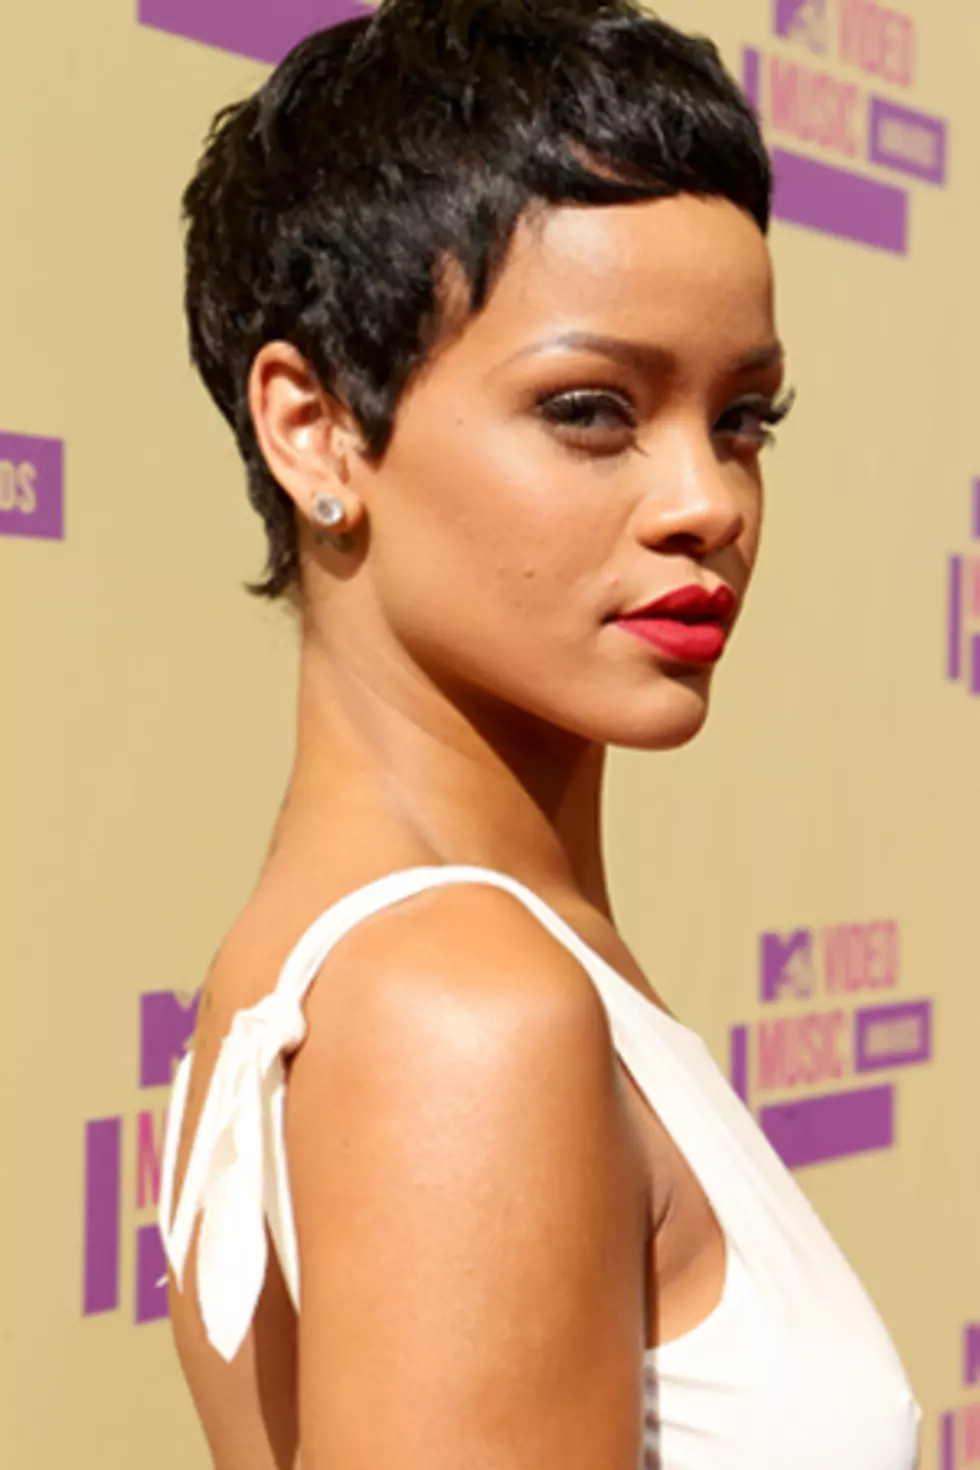 Rihanna Rocks Short Hair at 2012 MTV Video Music Awards